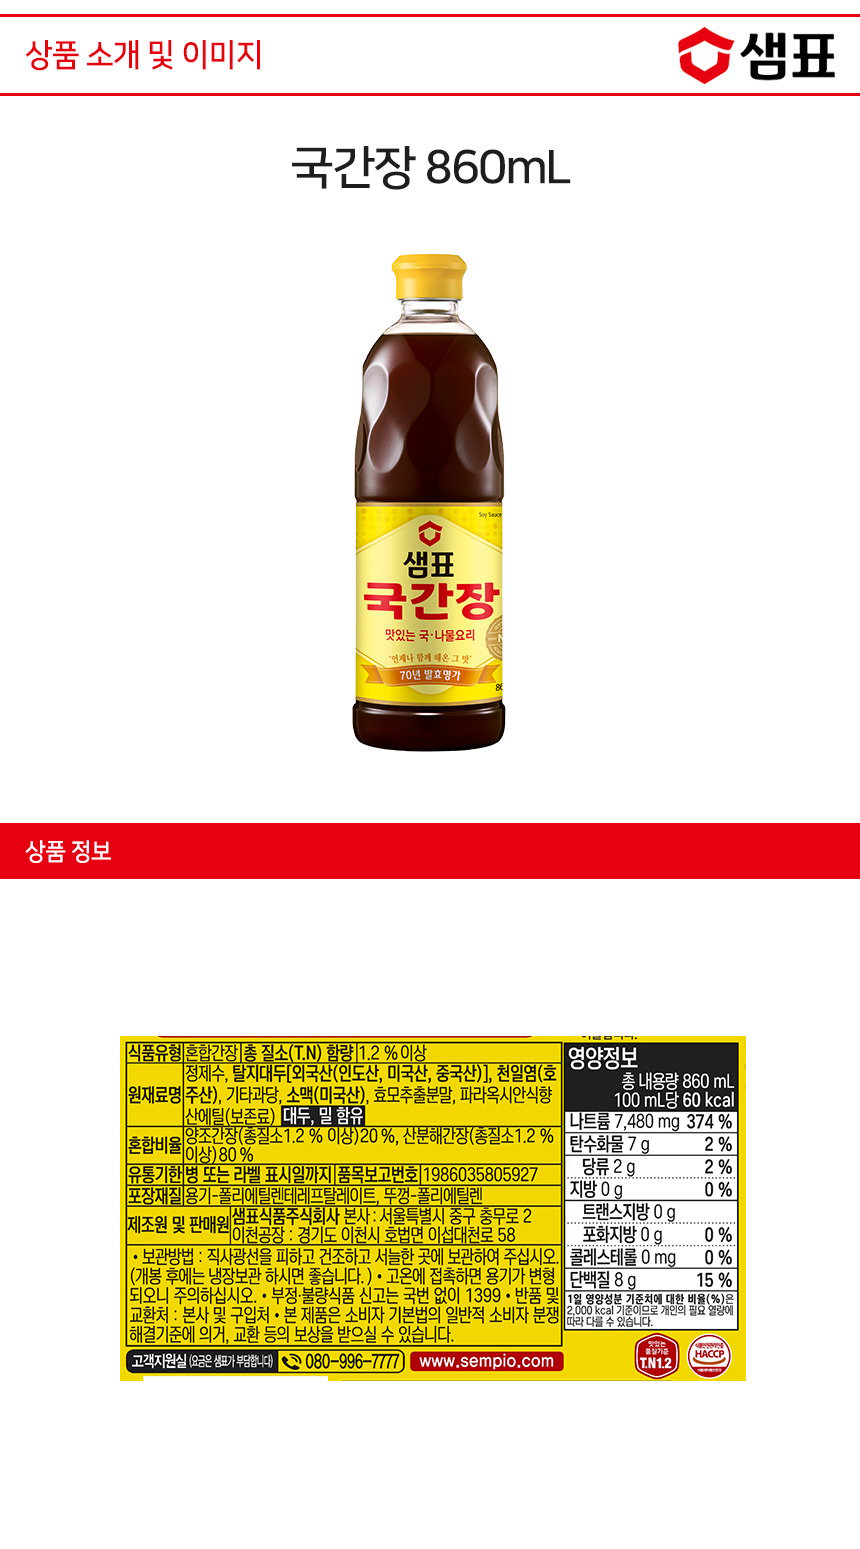 韓國食品-[샘표] 국간장 860ml